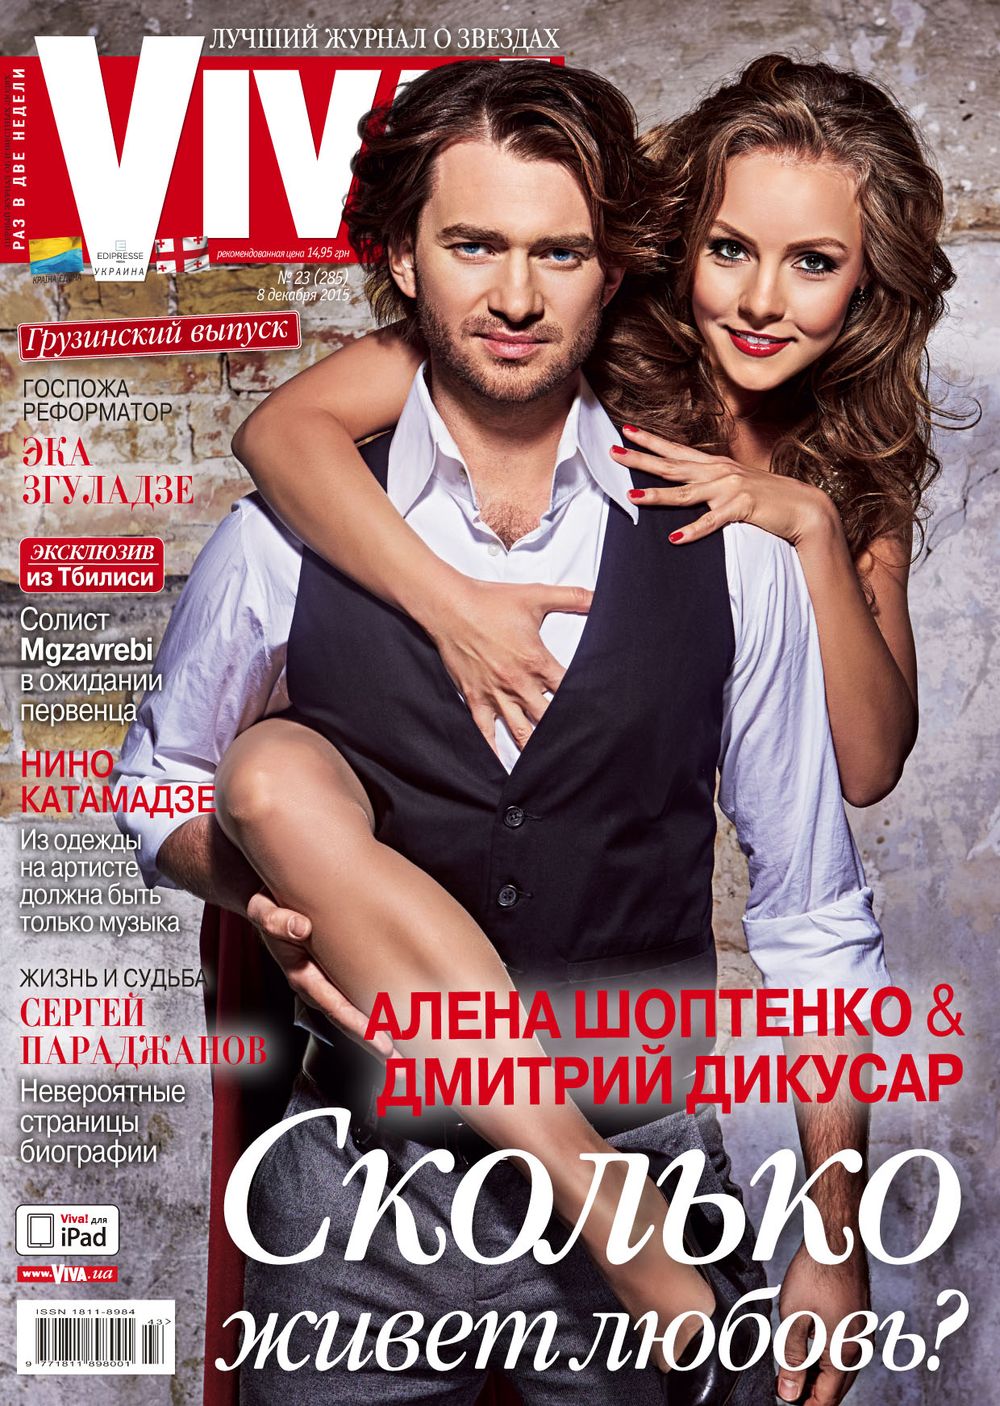 Алена Шоптенко и Дмитрий Дикусар на обложке журнала Viva!